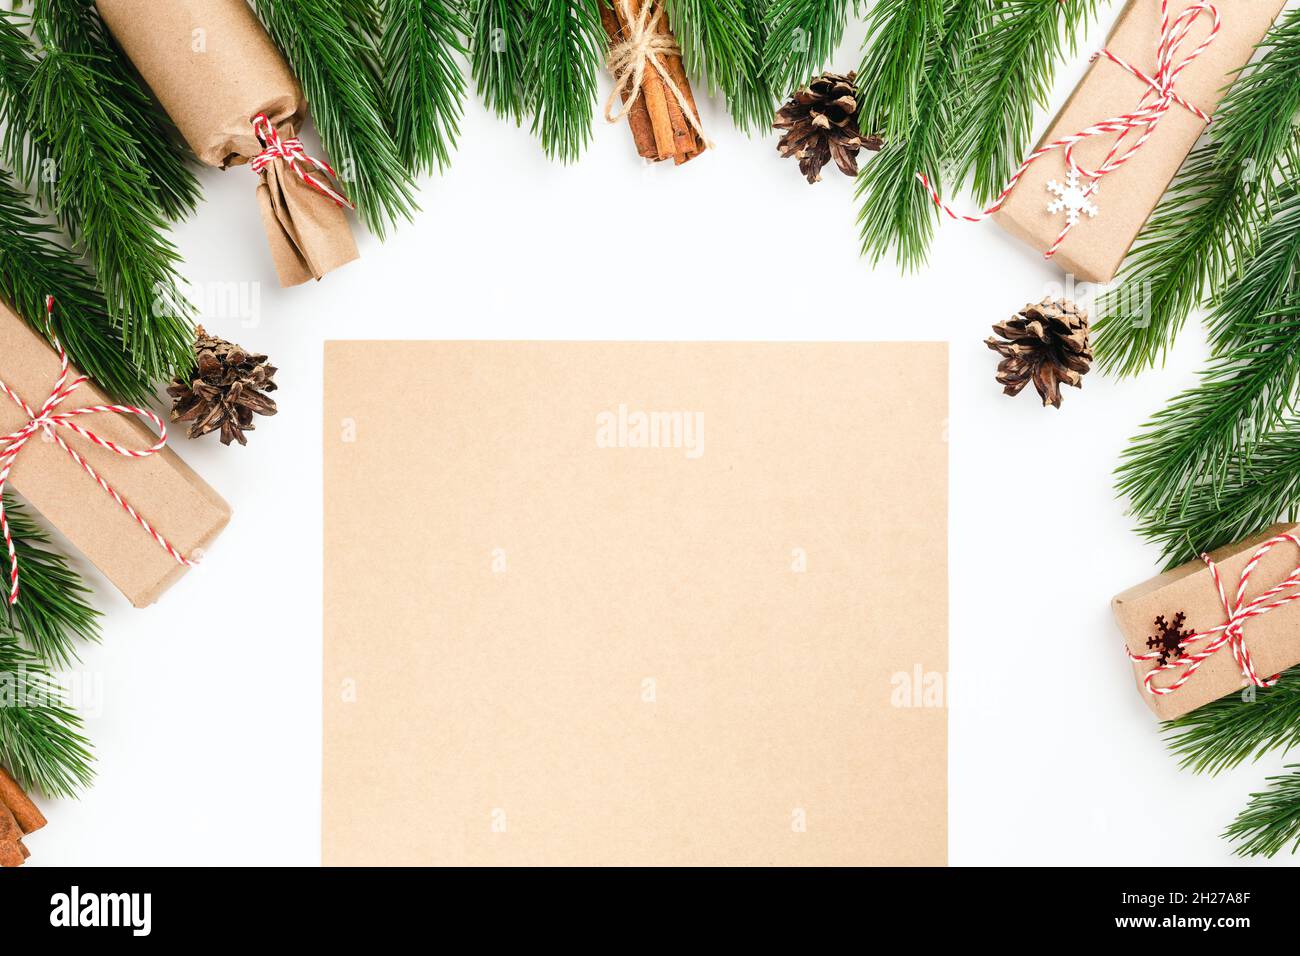 Vider le papier artisanal dans le cadre de branches de pin de Noël, des paquets de cannelle et de cônes, concert de fête Banque D'Images